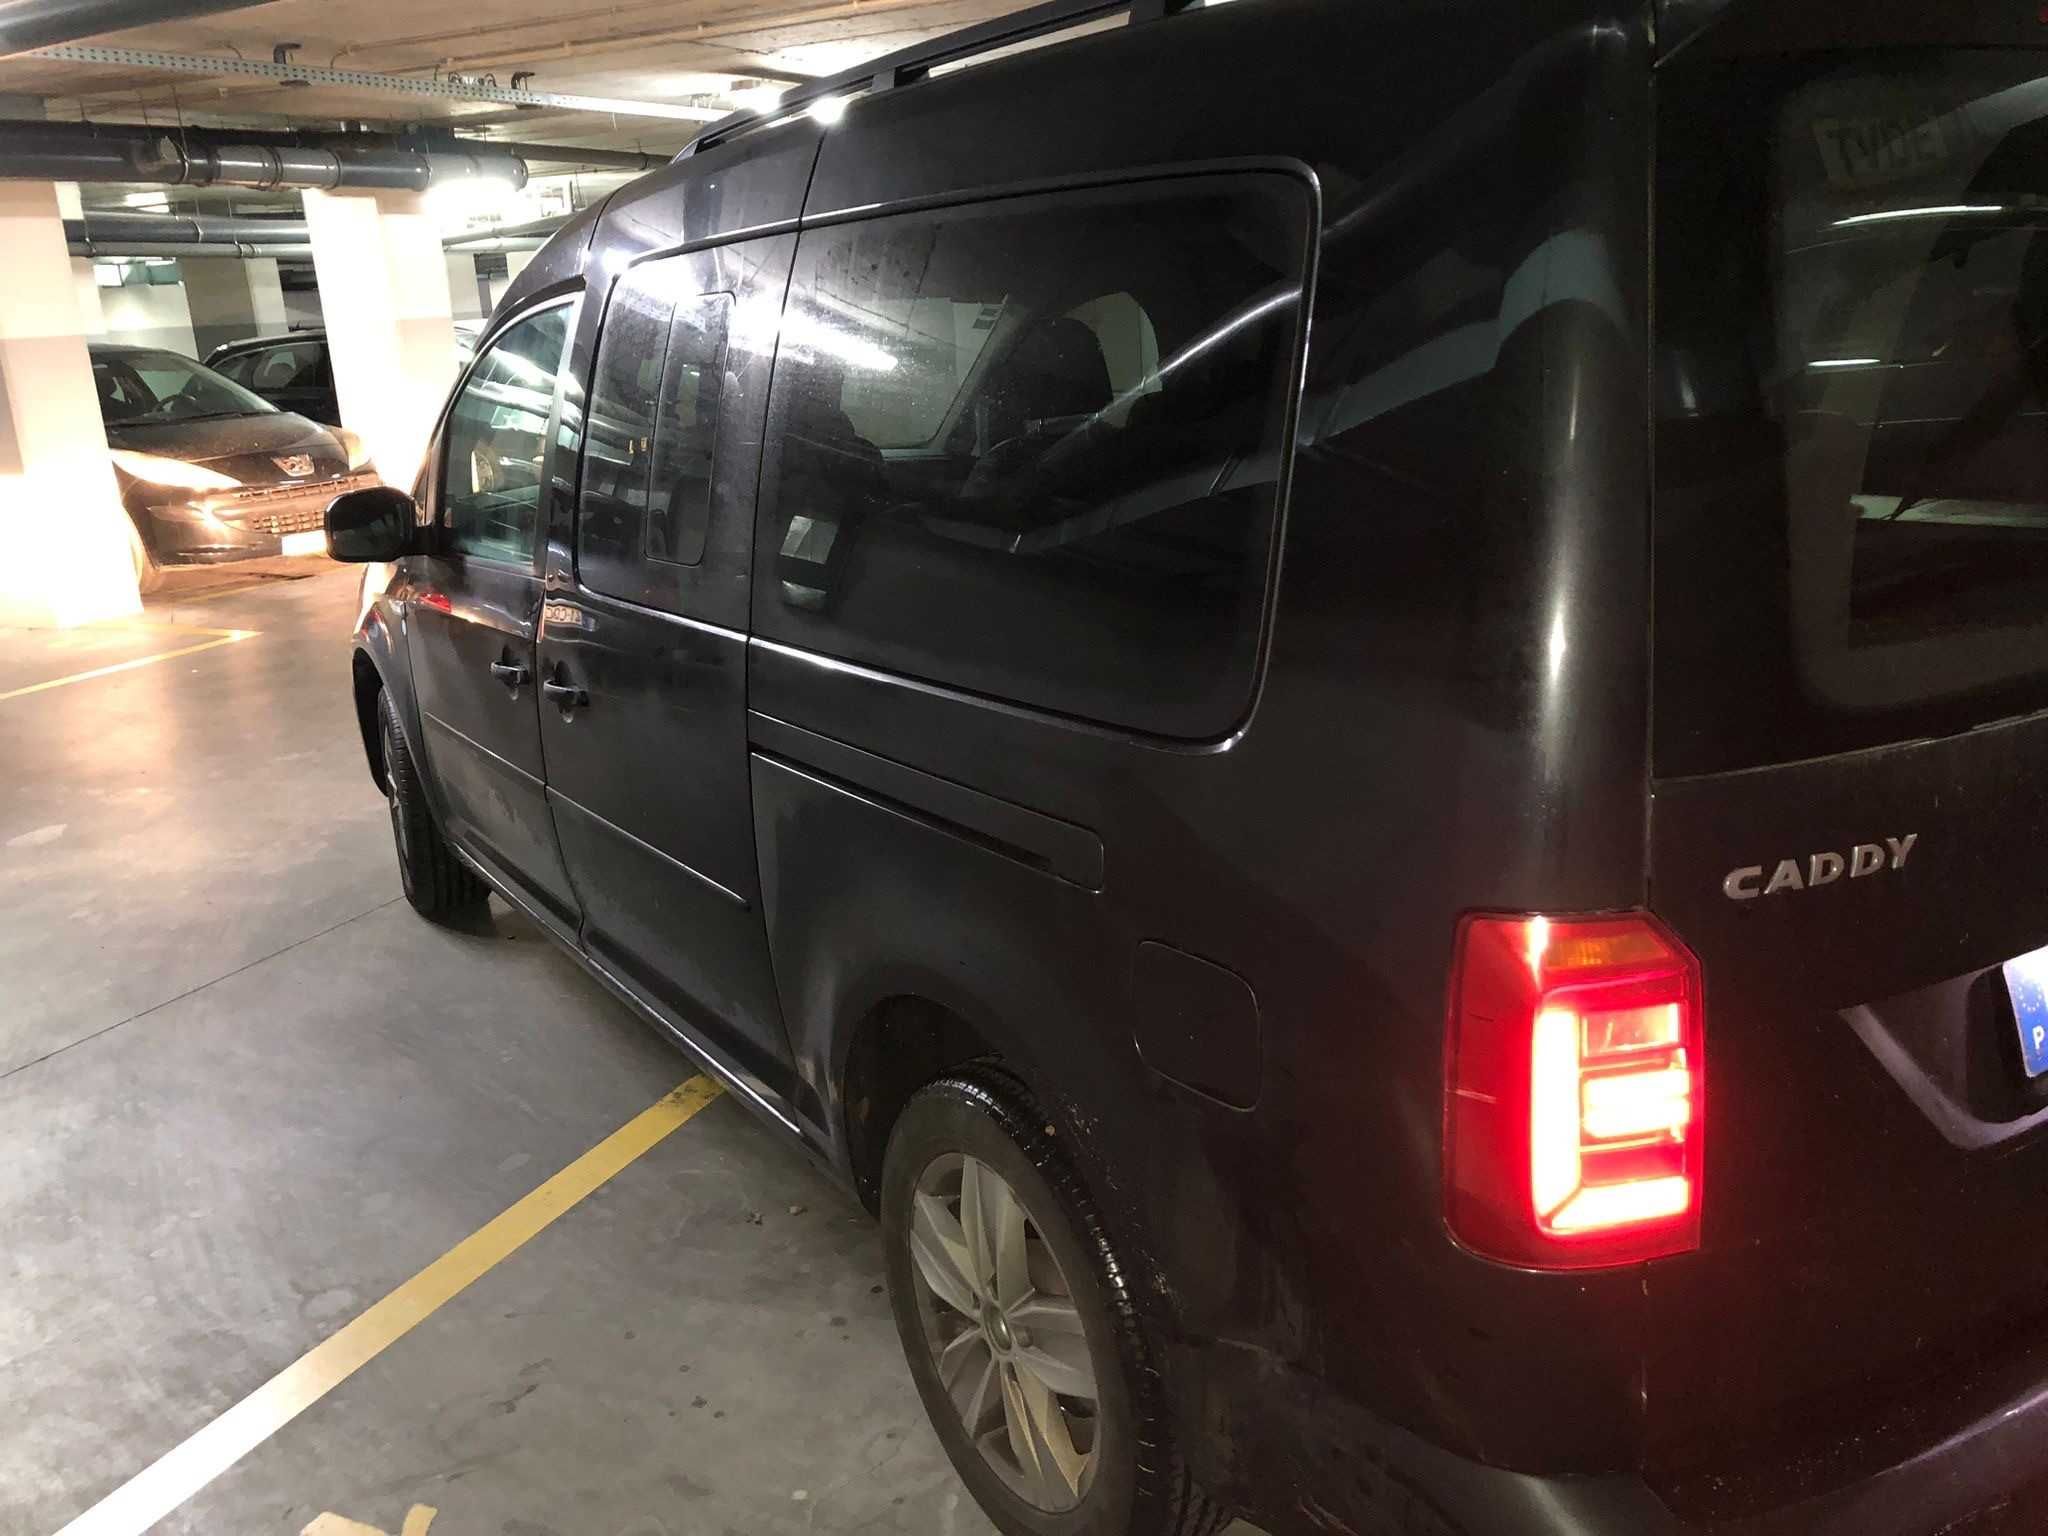 VW Caddy XL 2019 7 Lugares Bom estado geral